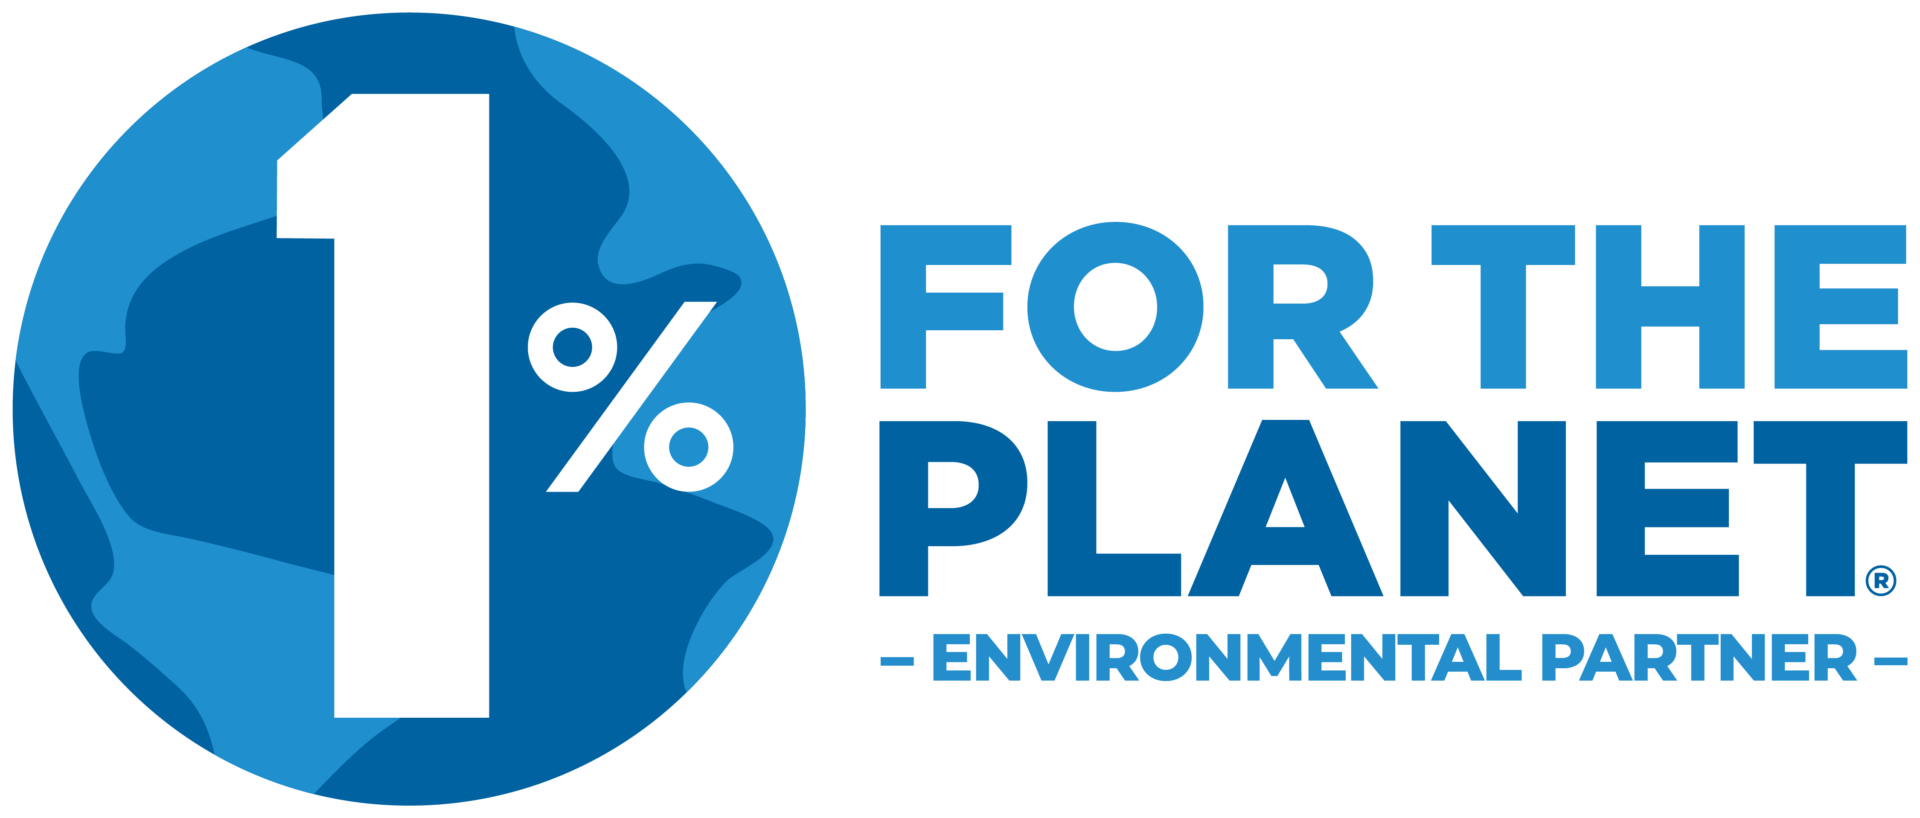 1 percent for the planet environmental partner logo